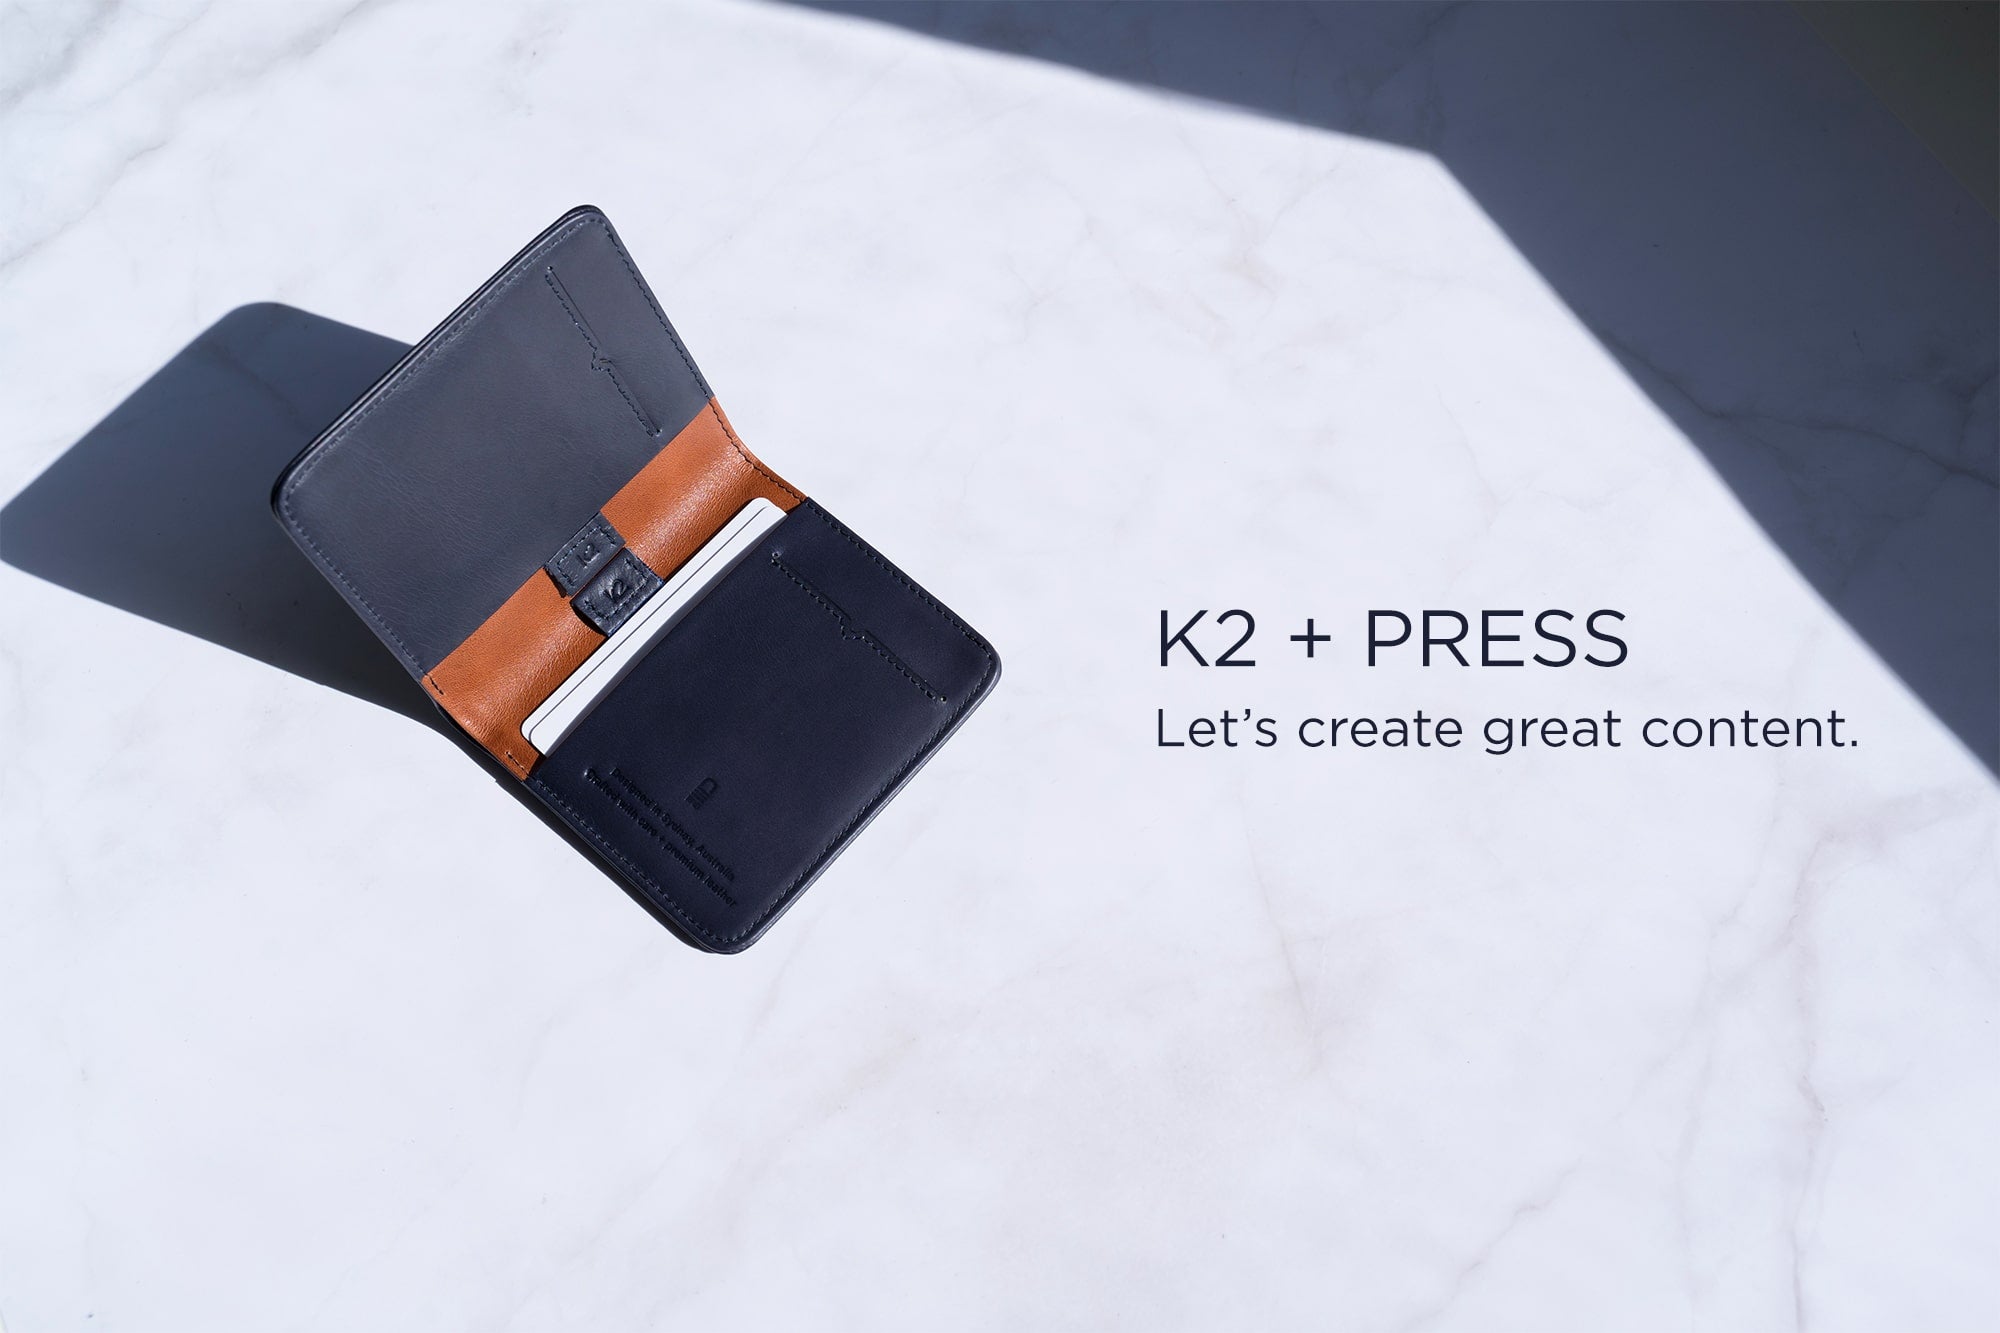 Karakoram2 K2 press kit